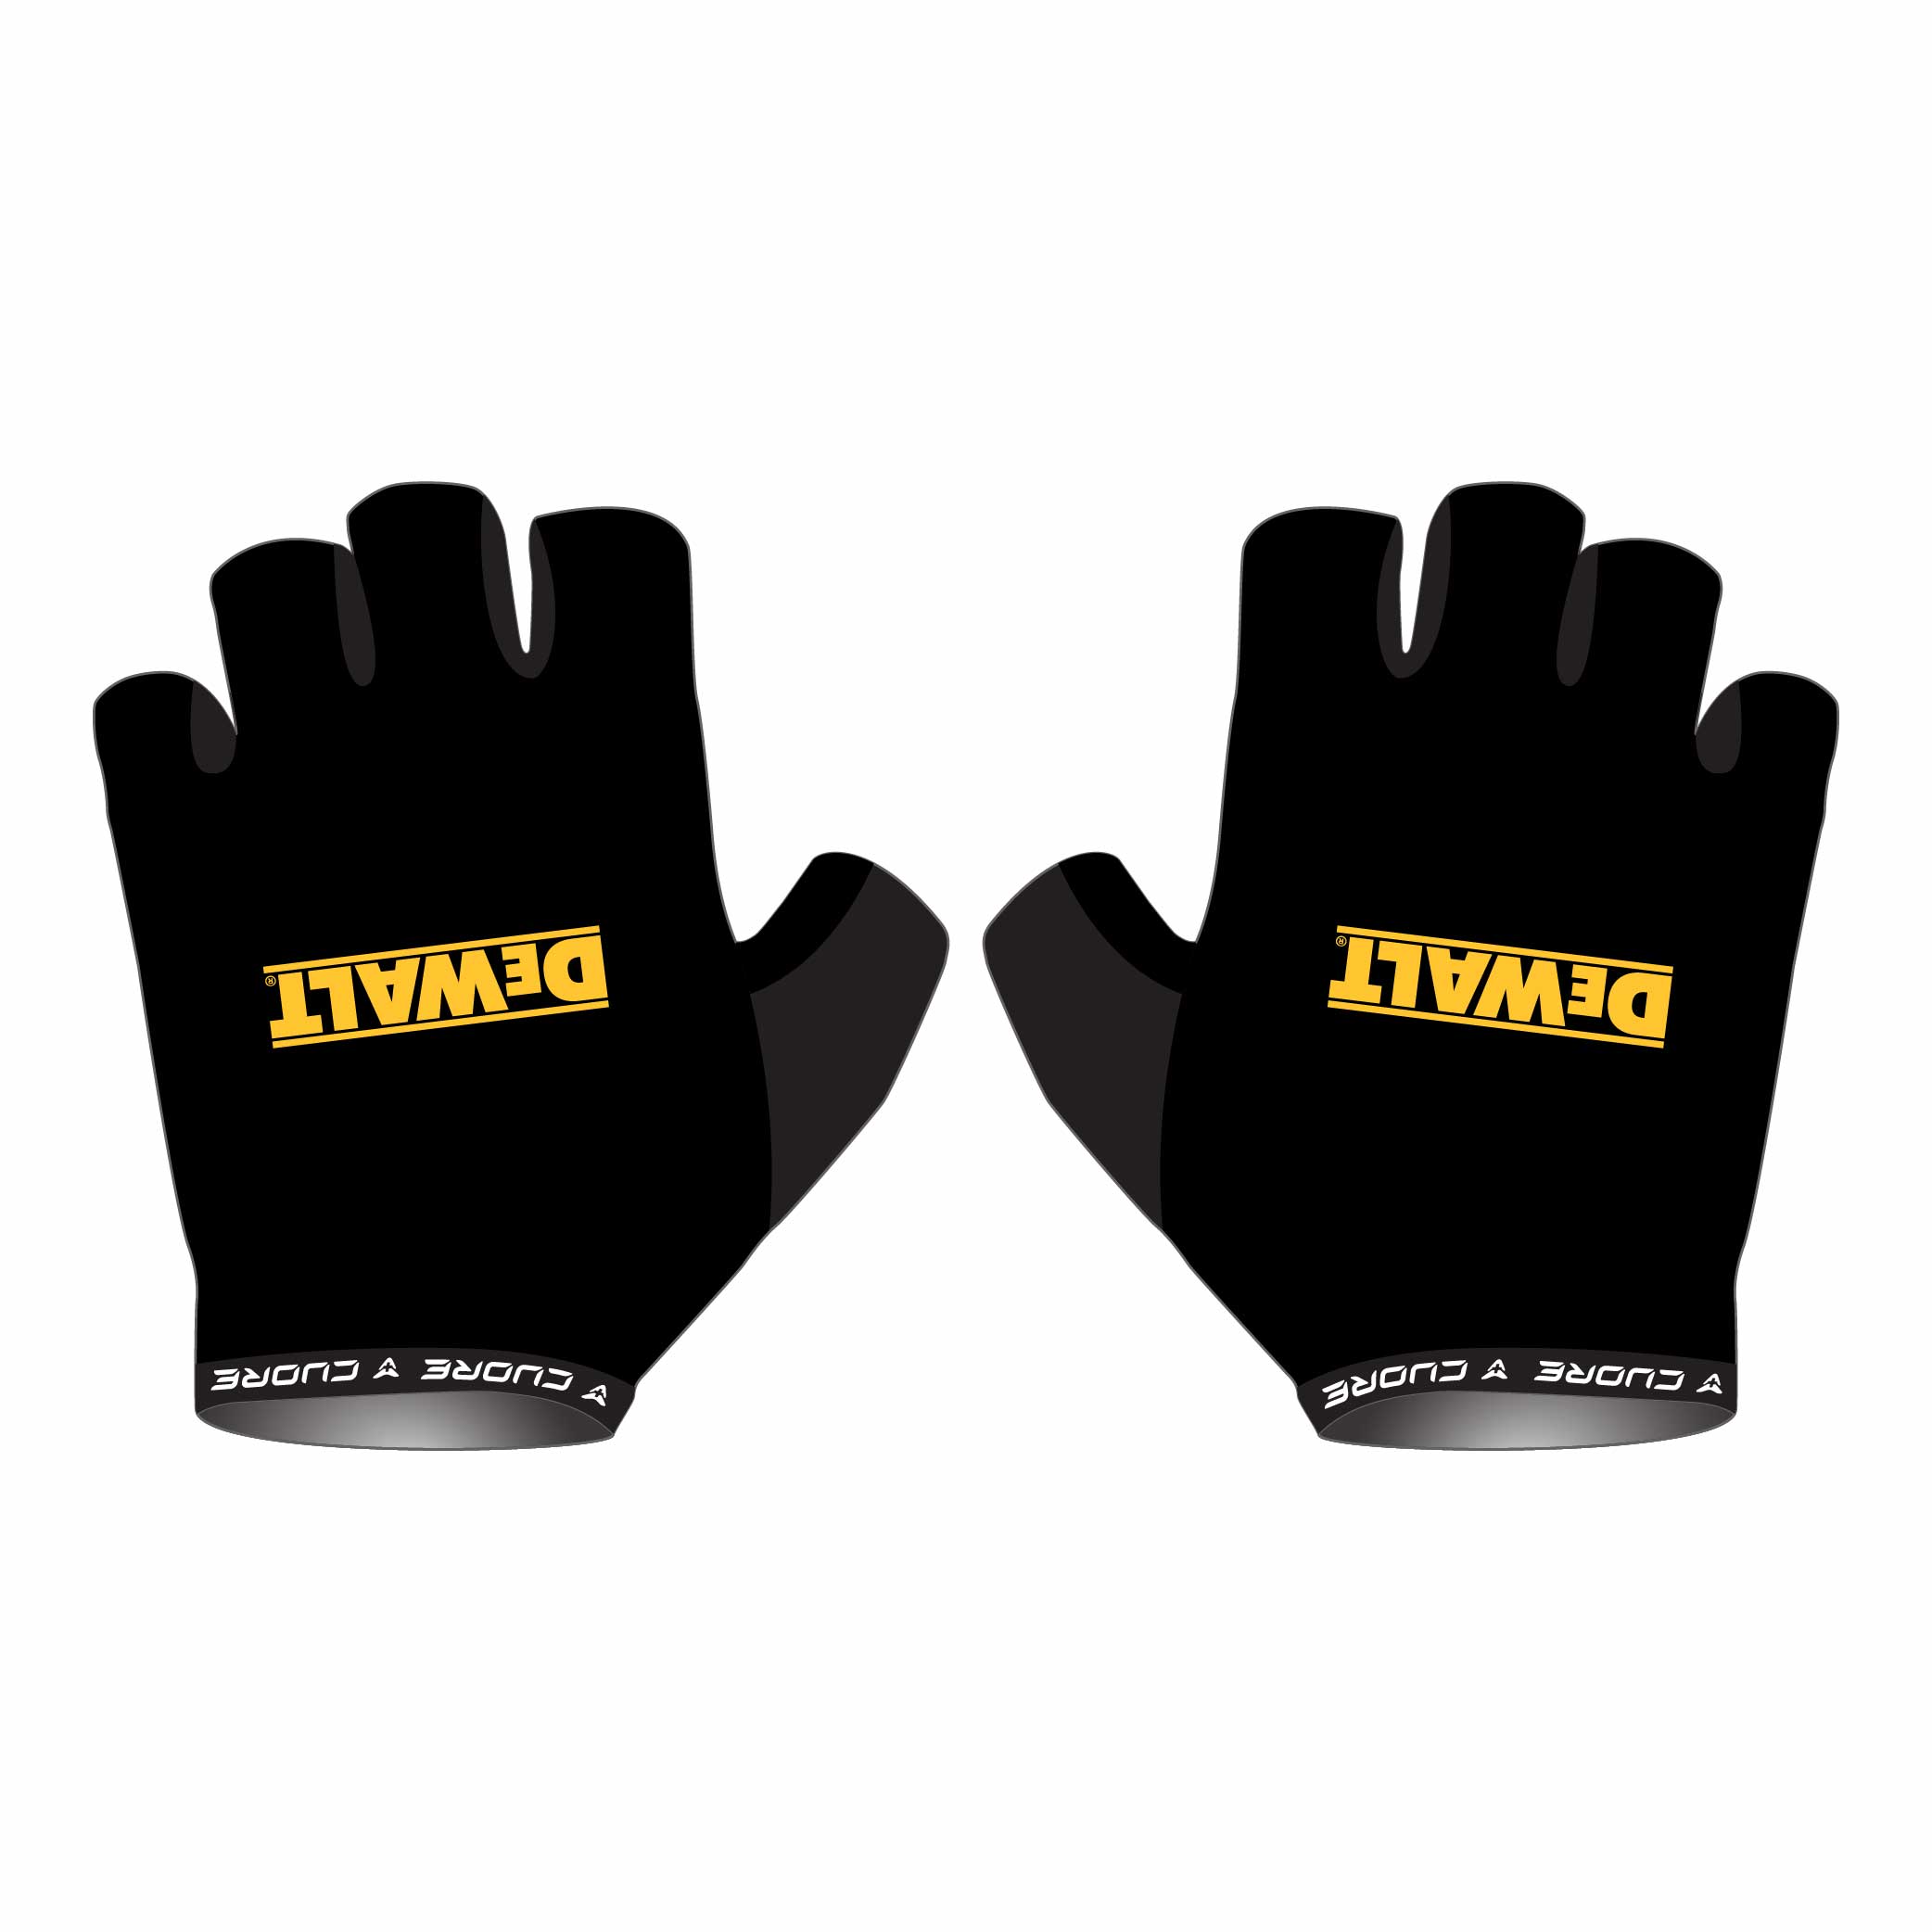 dewalt-gloves-1.jpg